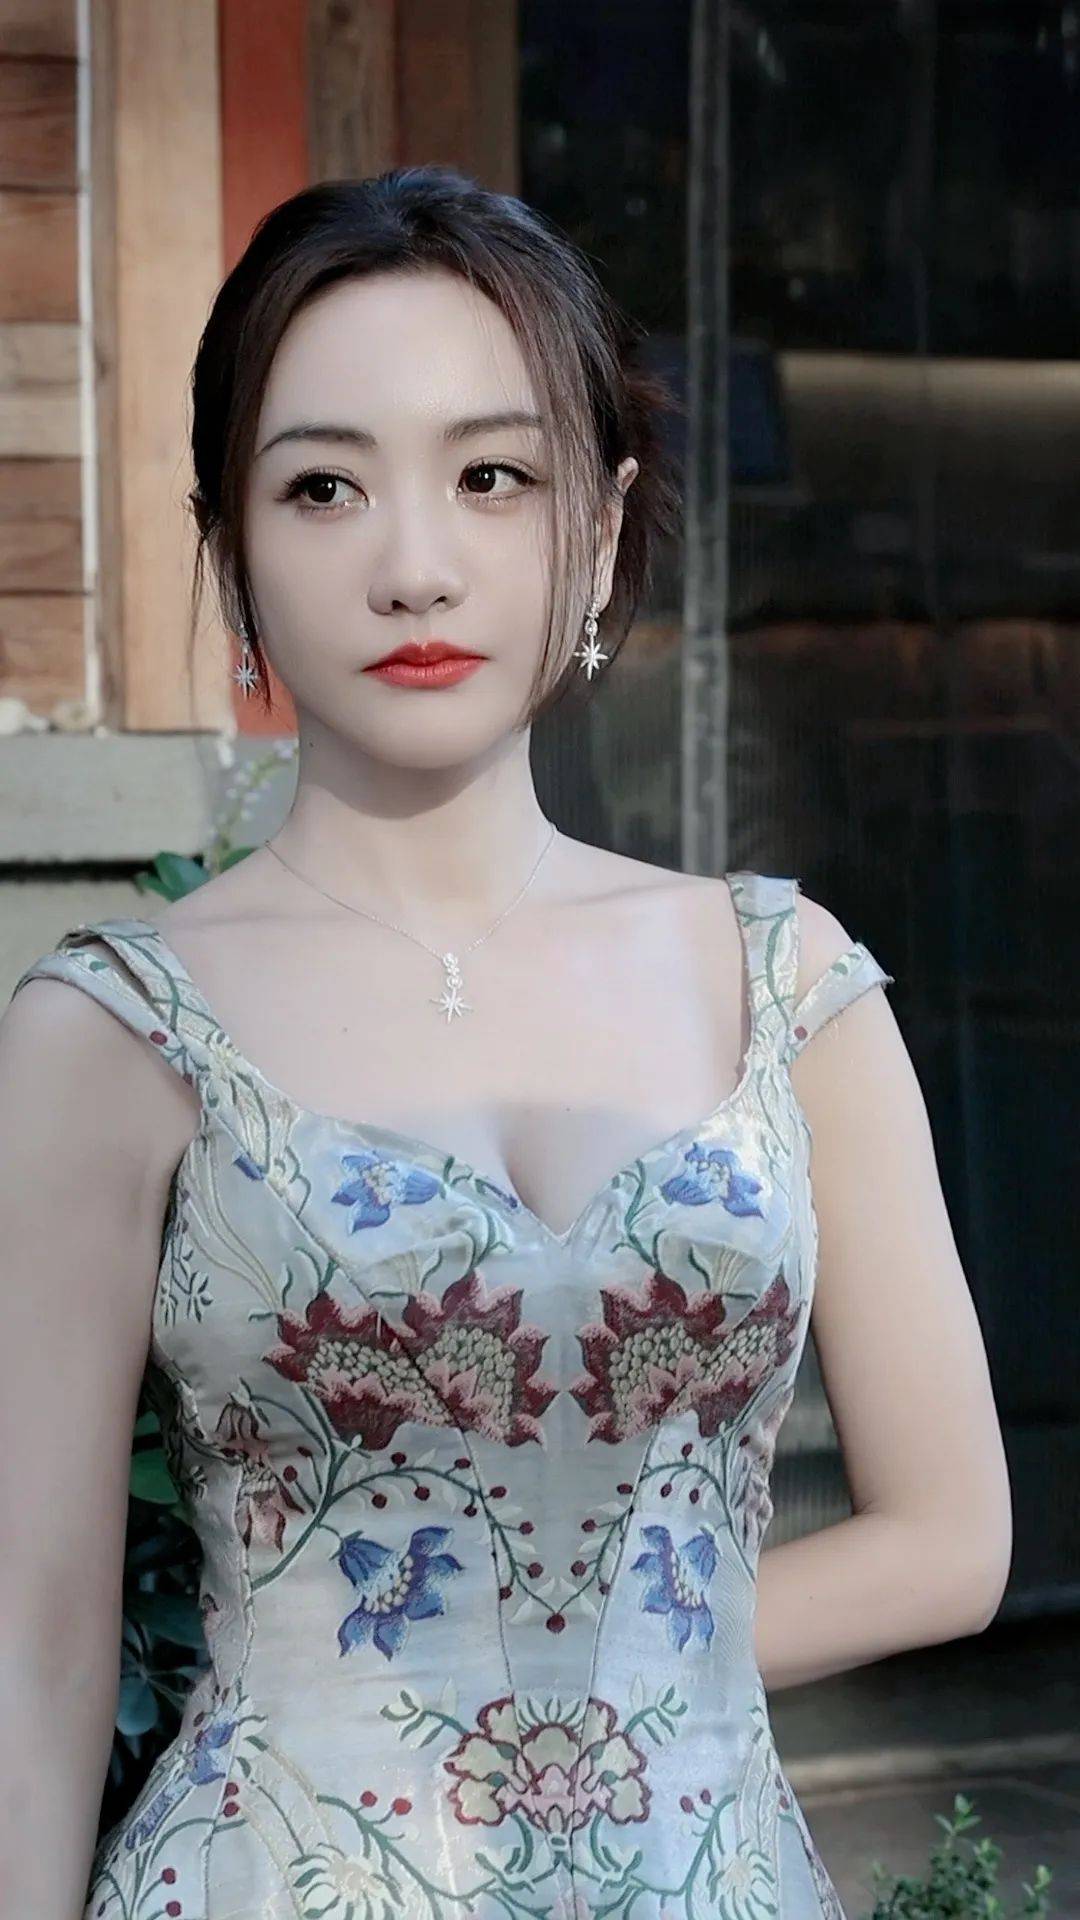 【杨蓉性感美图】花纹长裙,鲜艳典雅,化身北京时装周的花仙子